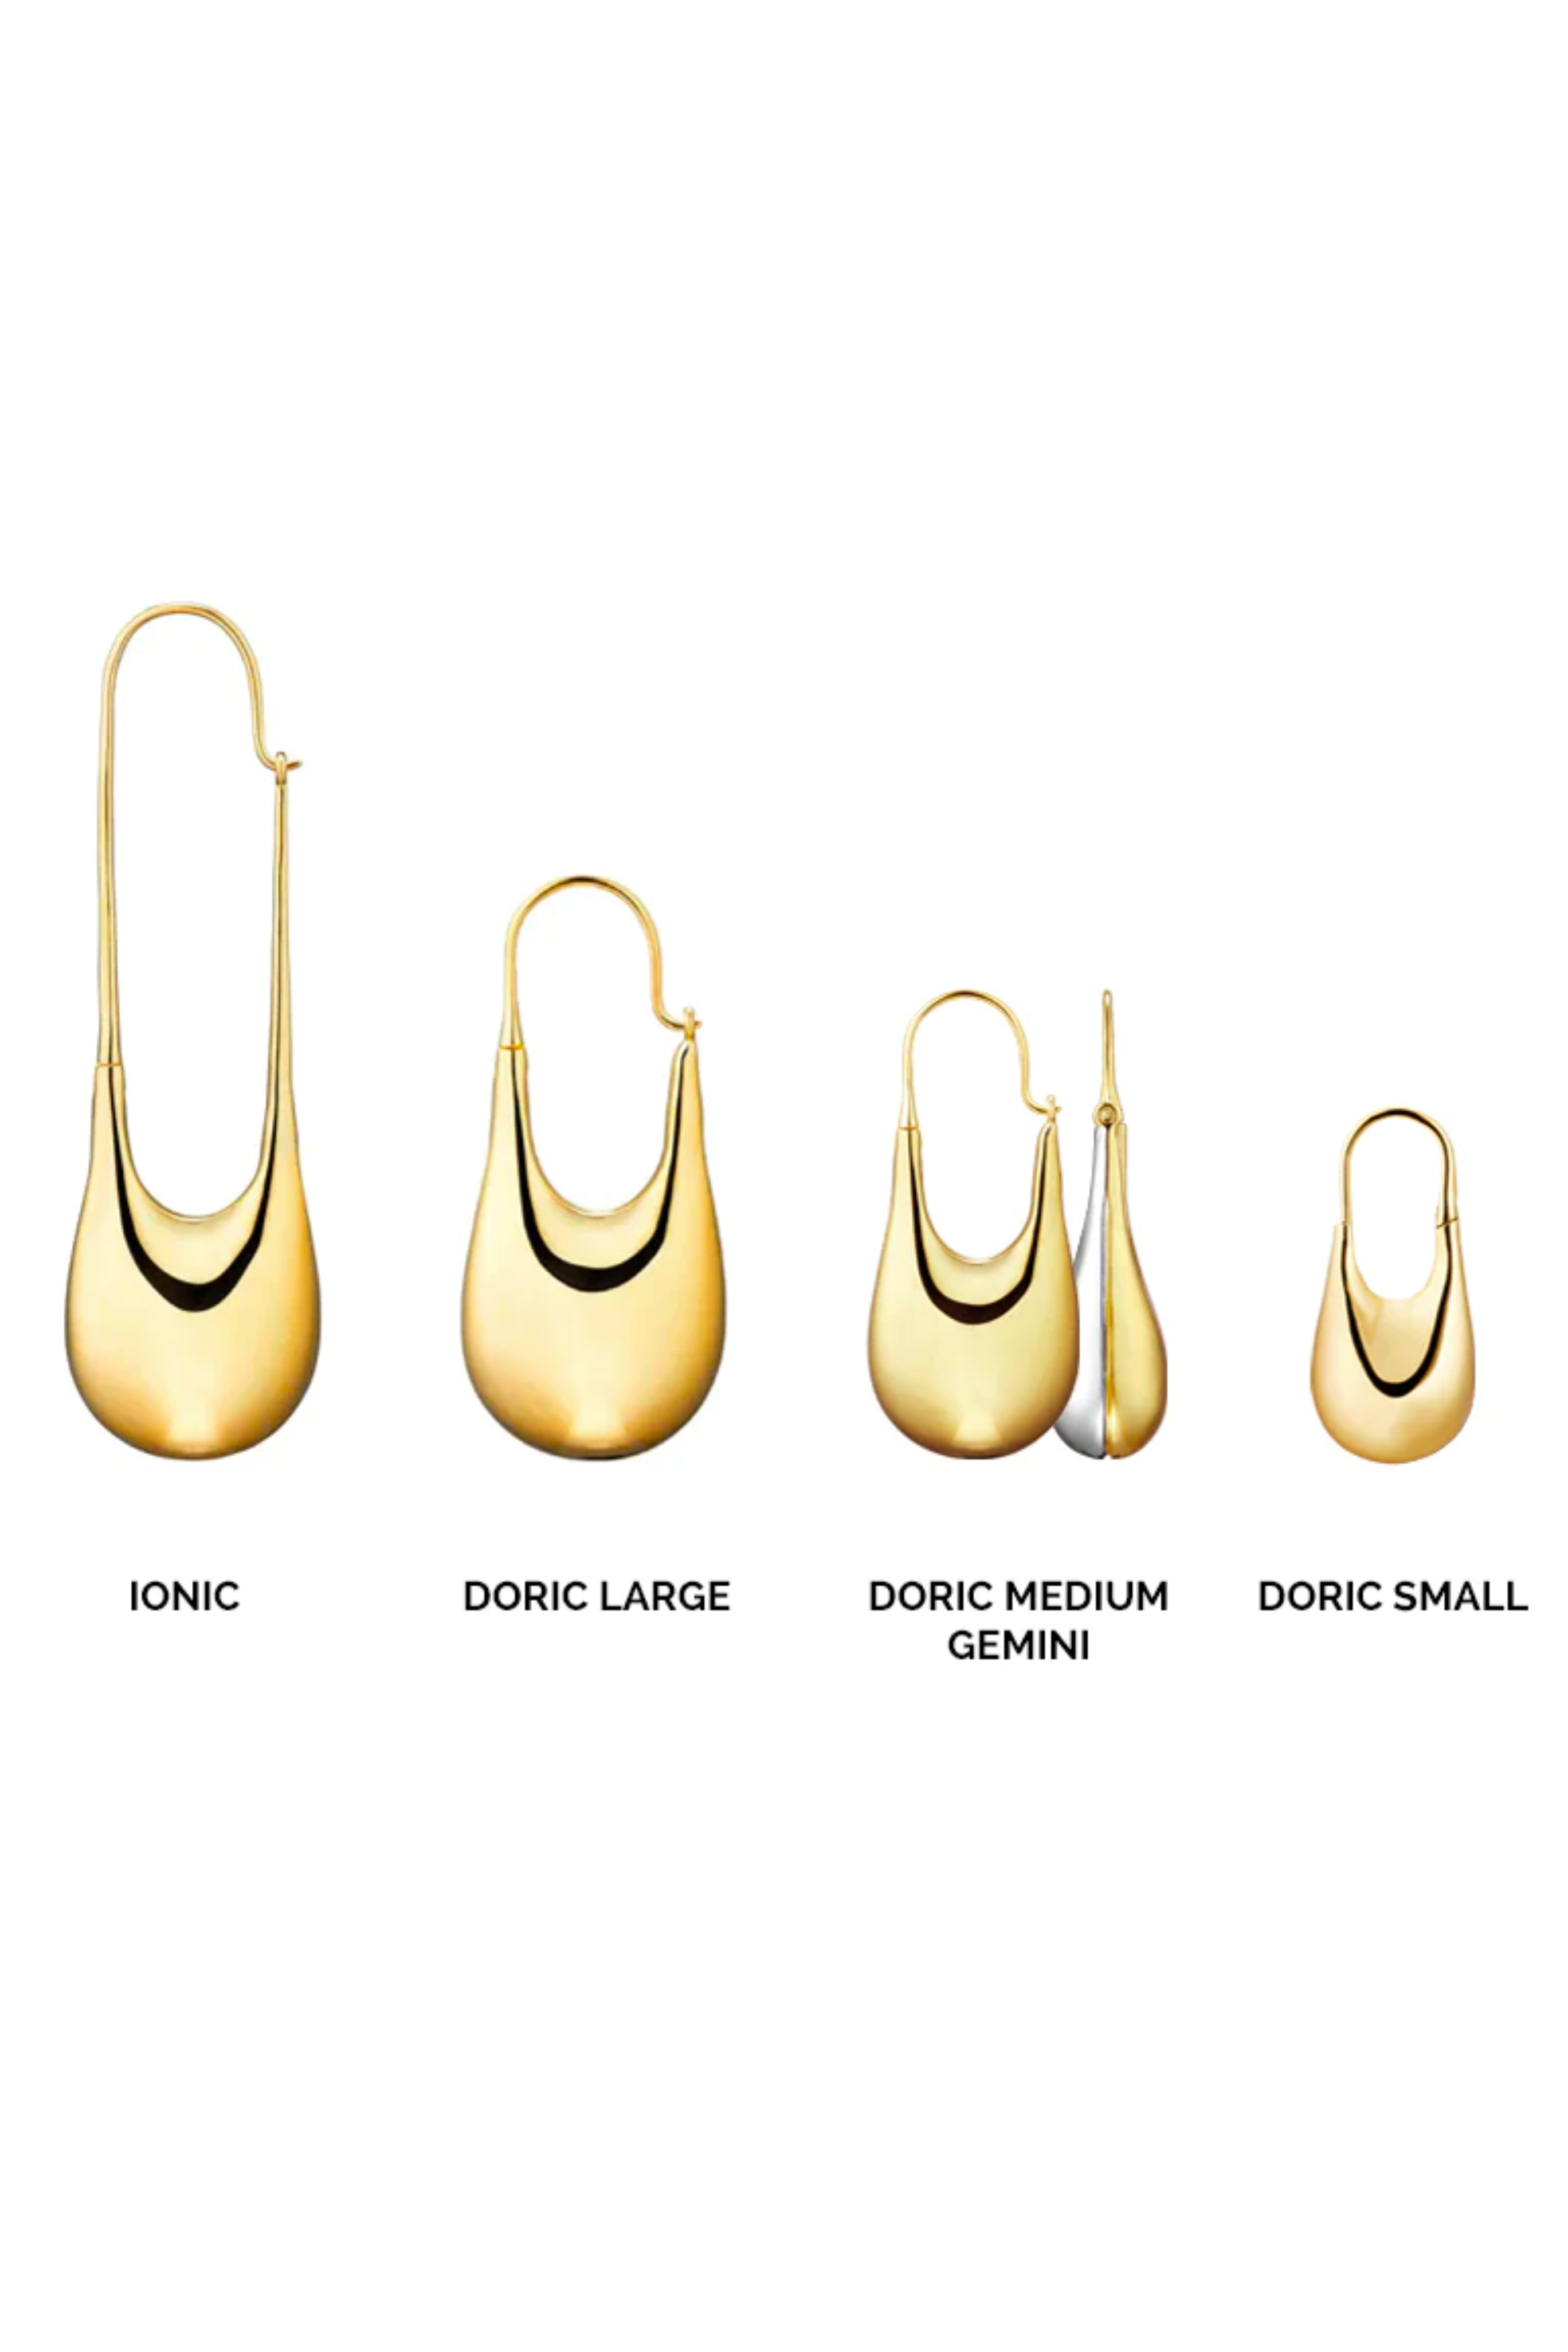 KINRADEN Doric Gold Earring